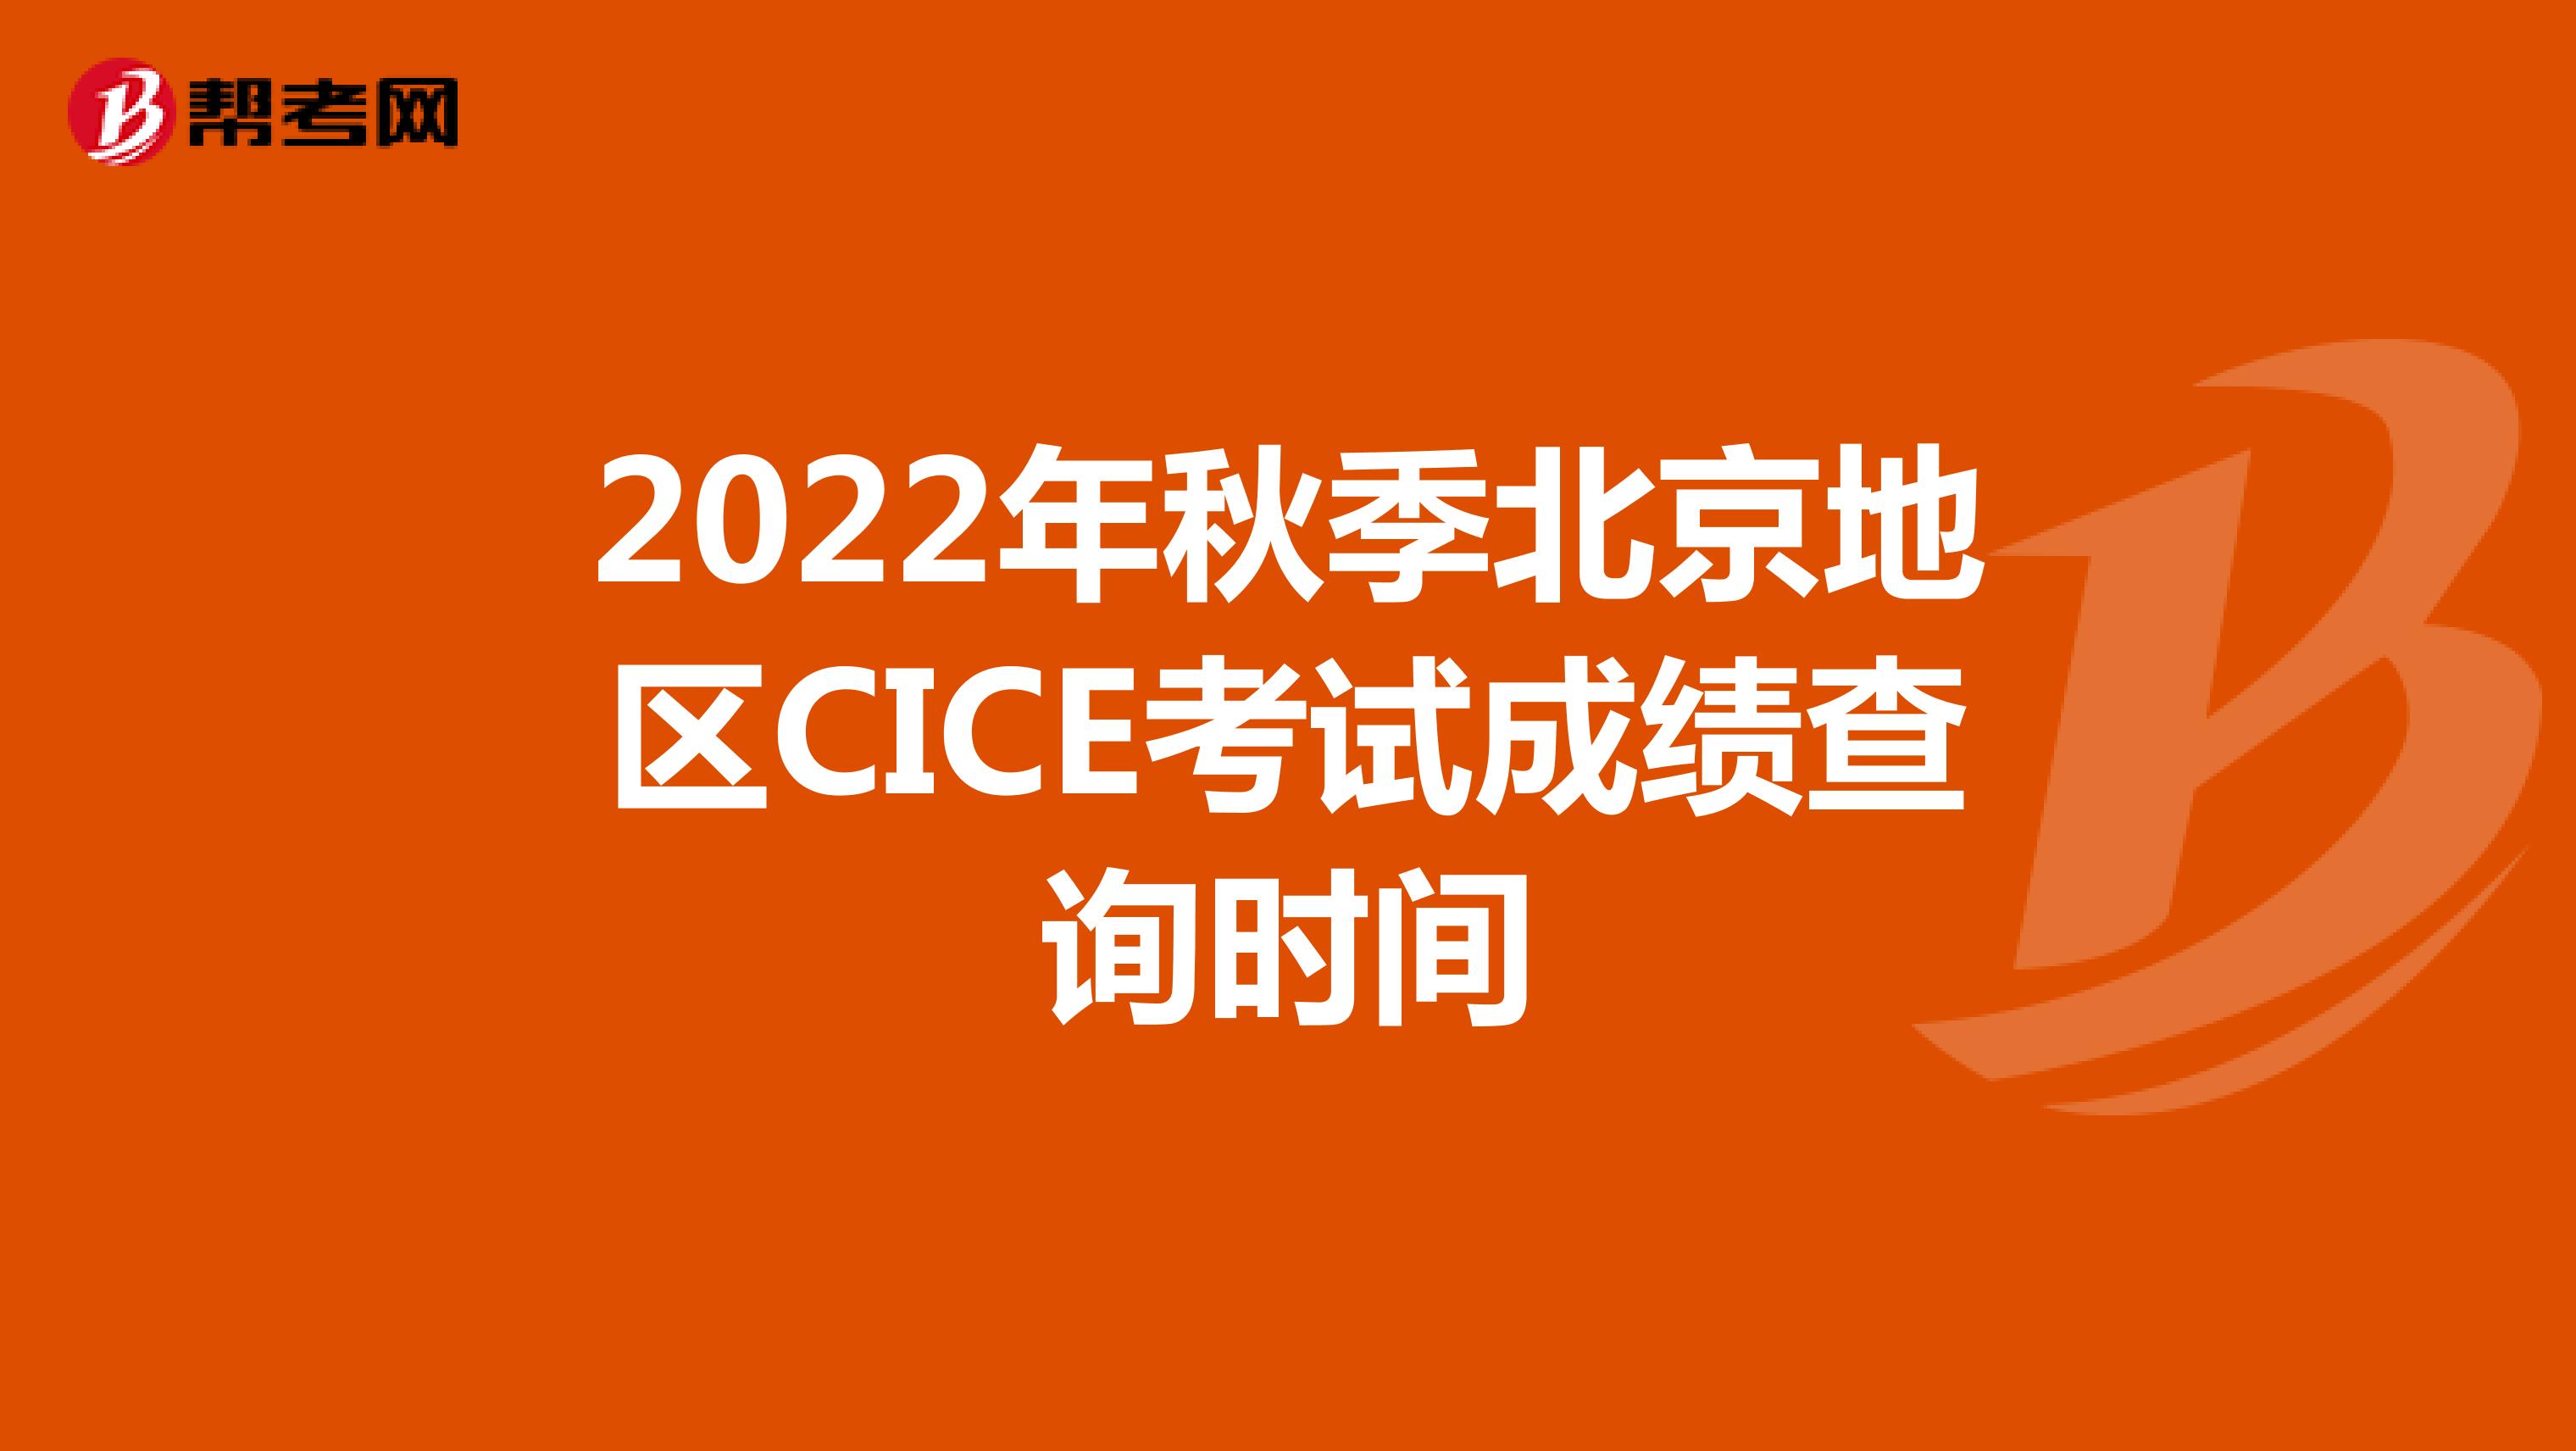 2022年春季北京地区CICE考试成绩查询时间